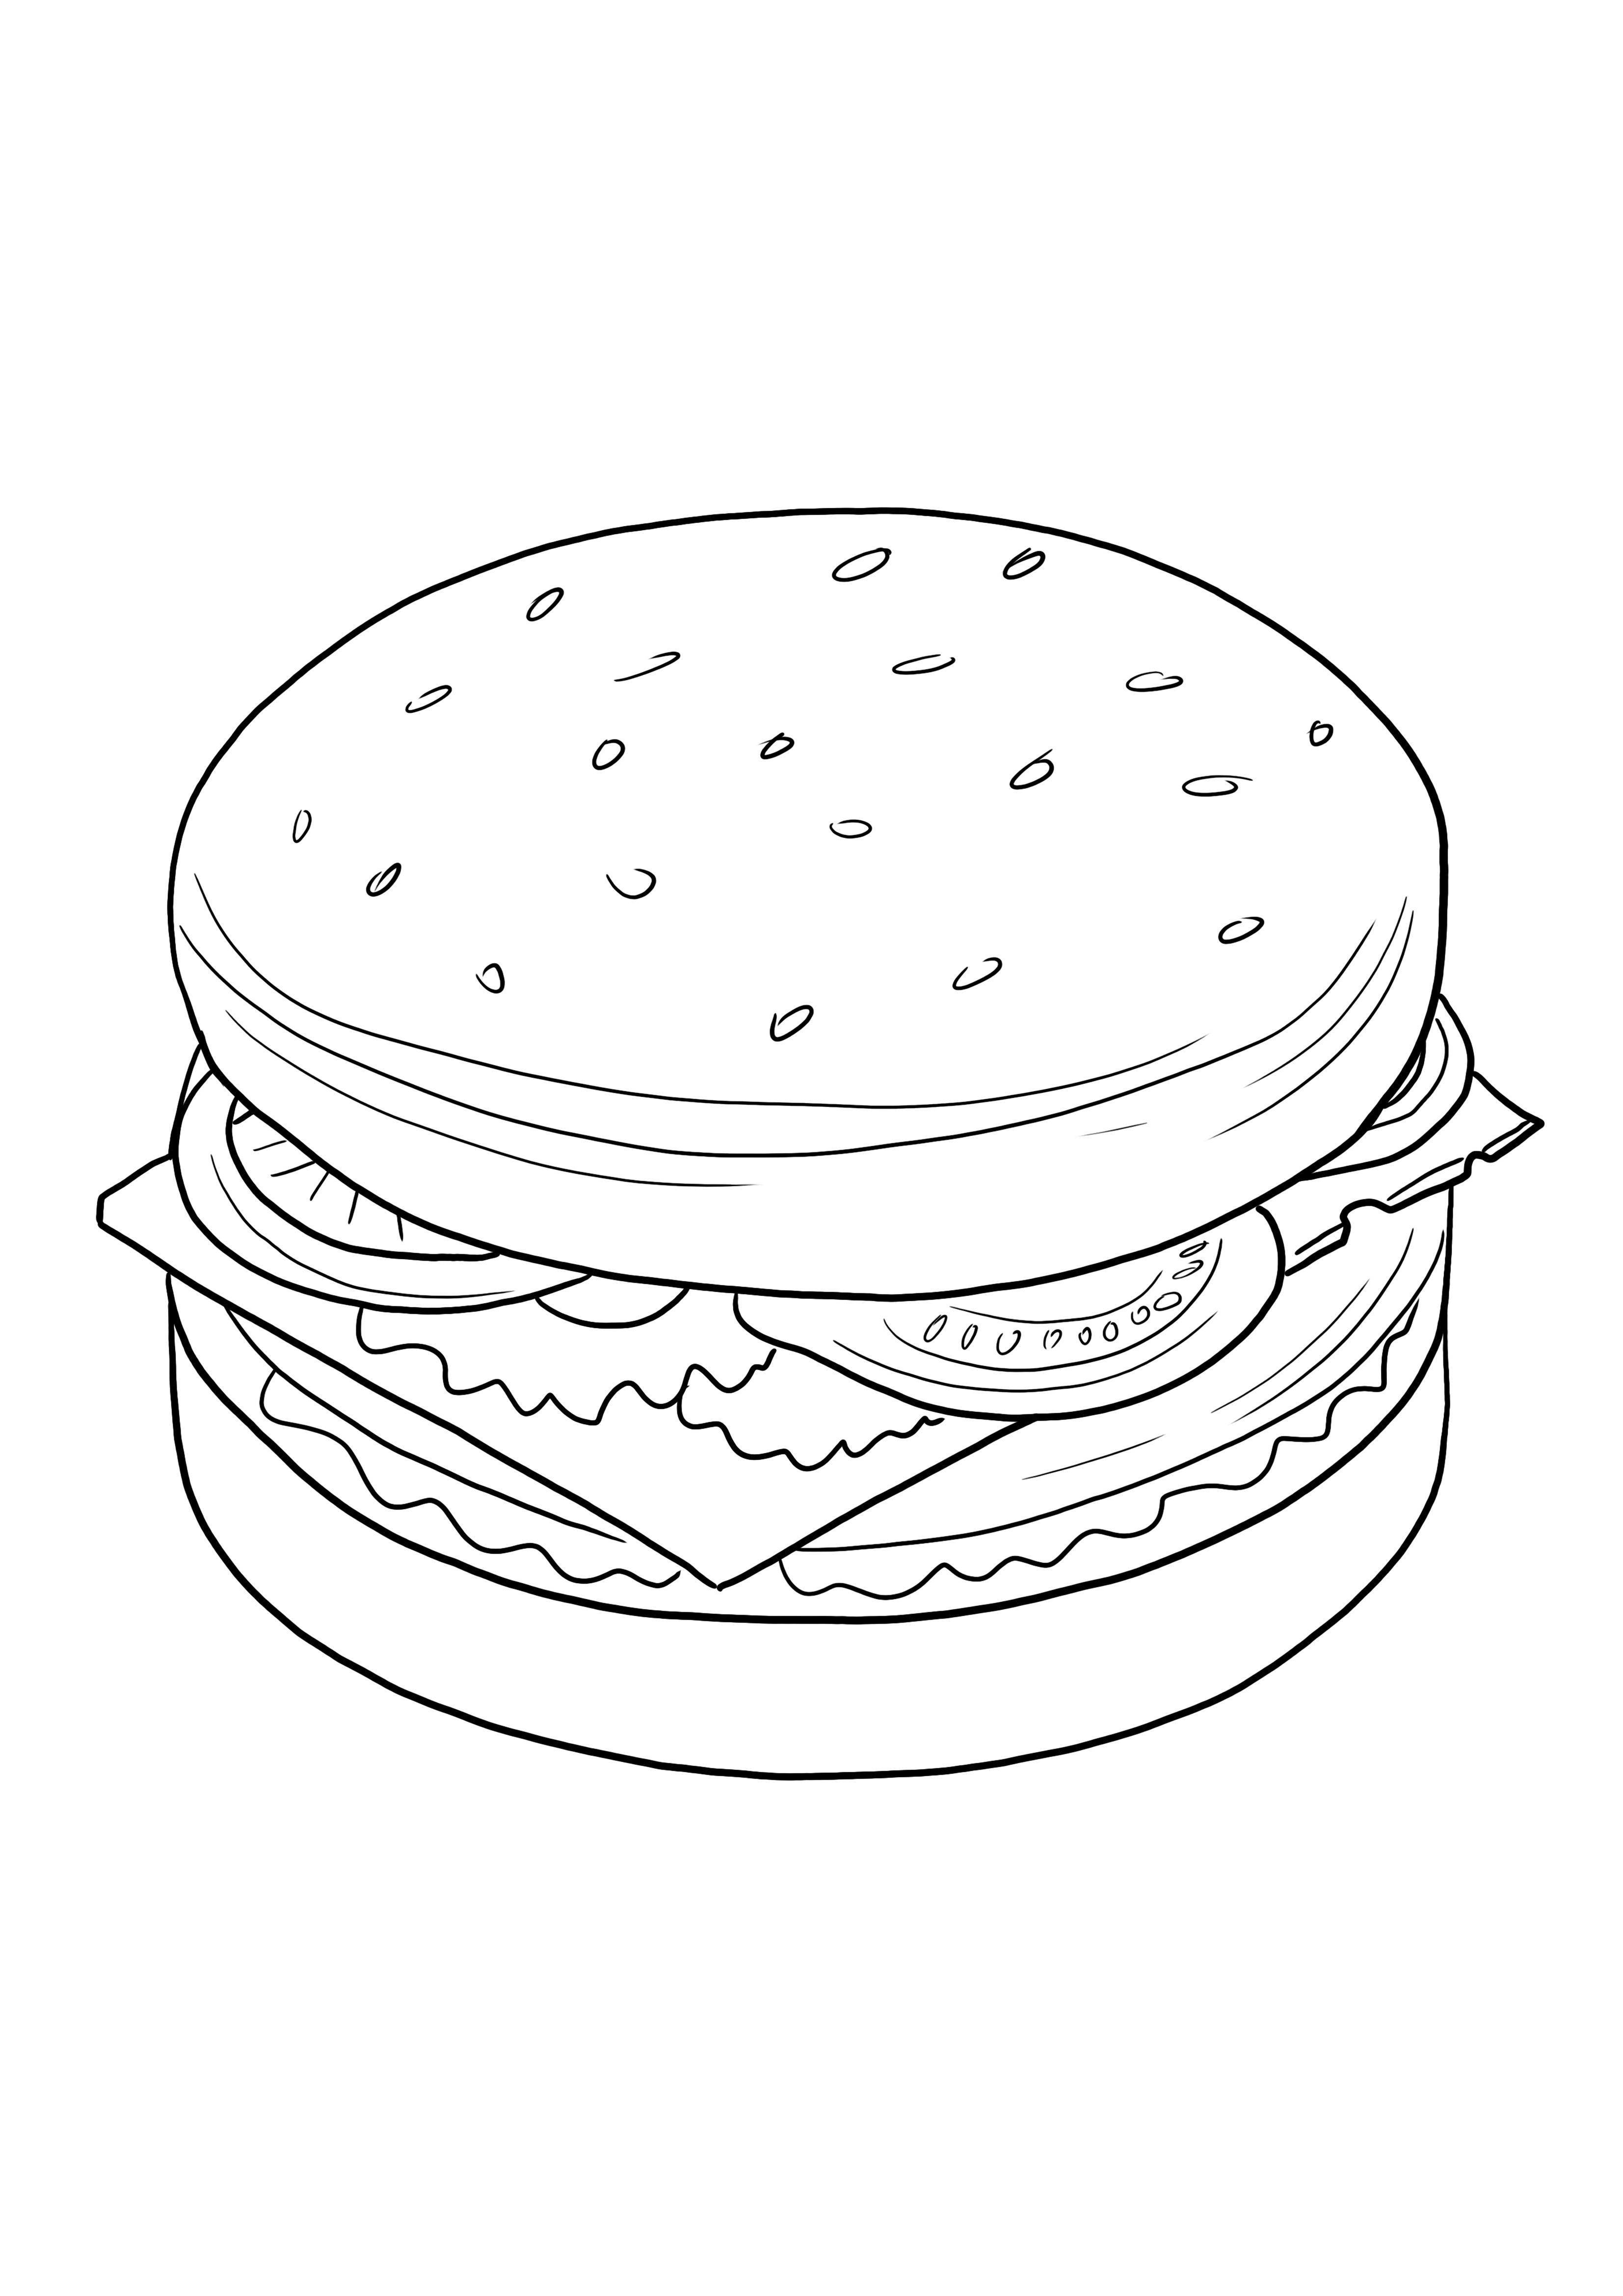 Cheeseburger da stampare e colorare gratis per bambini di tutte le età